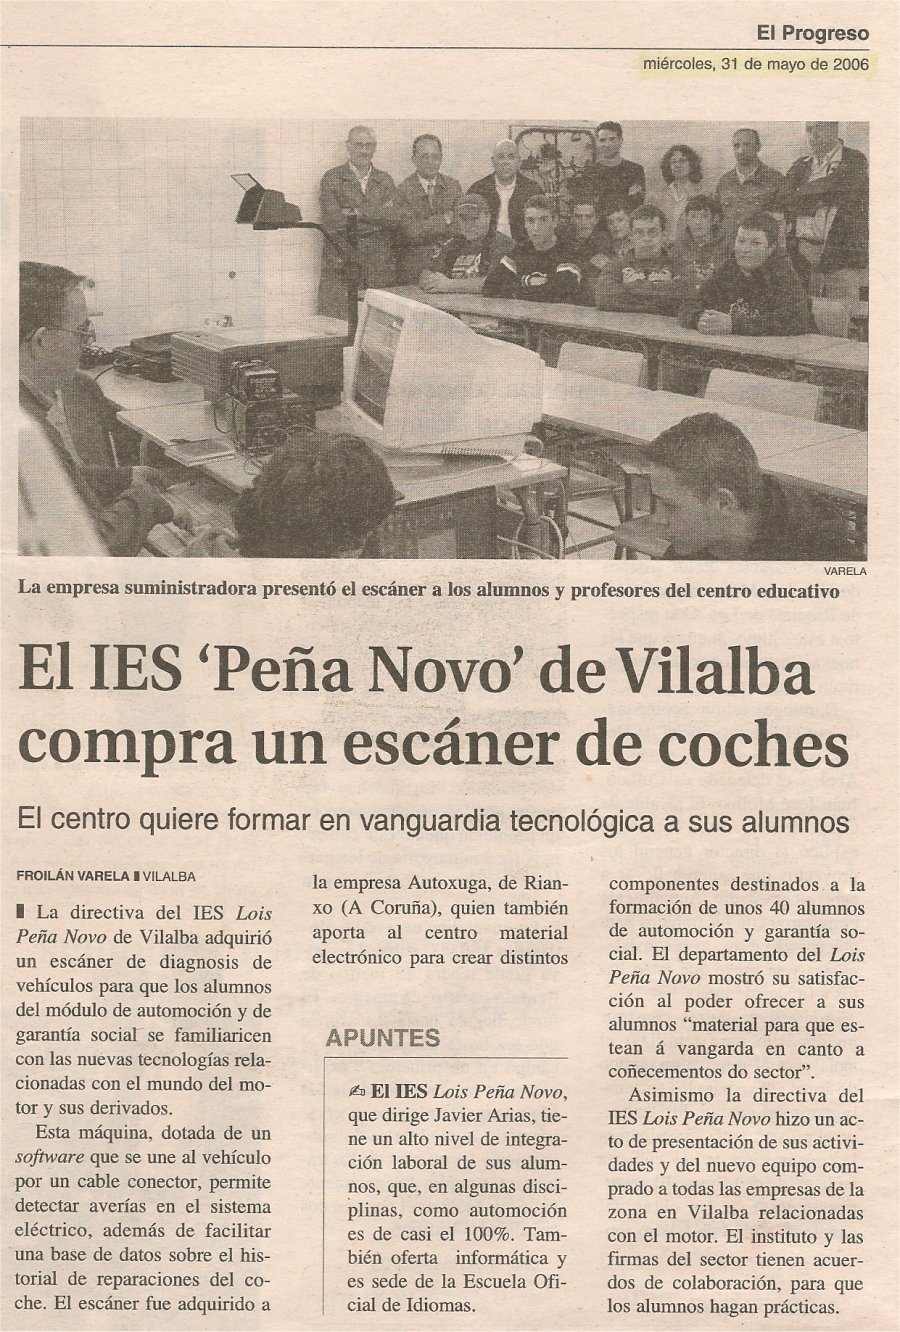 El IES de Vilalba compra el escaner de coches Autoxuga